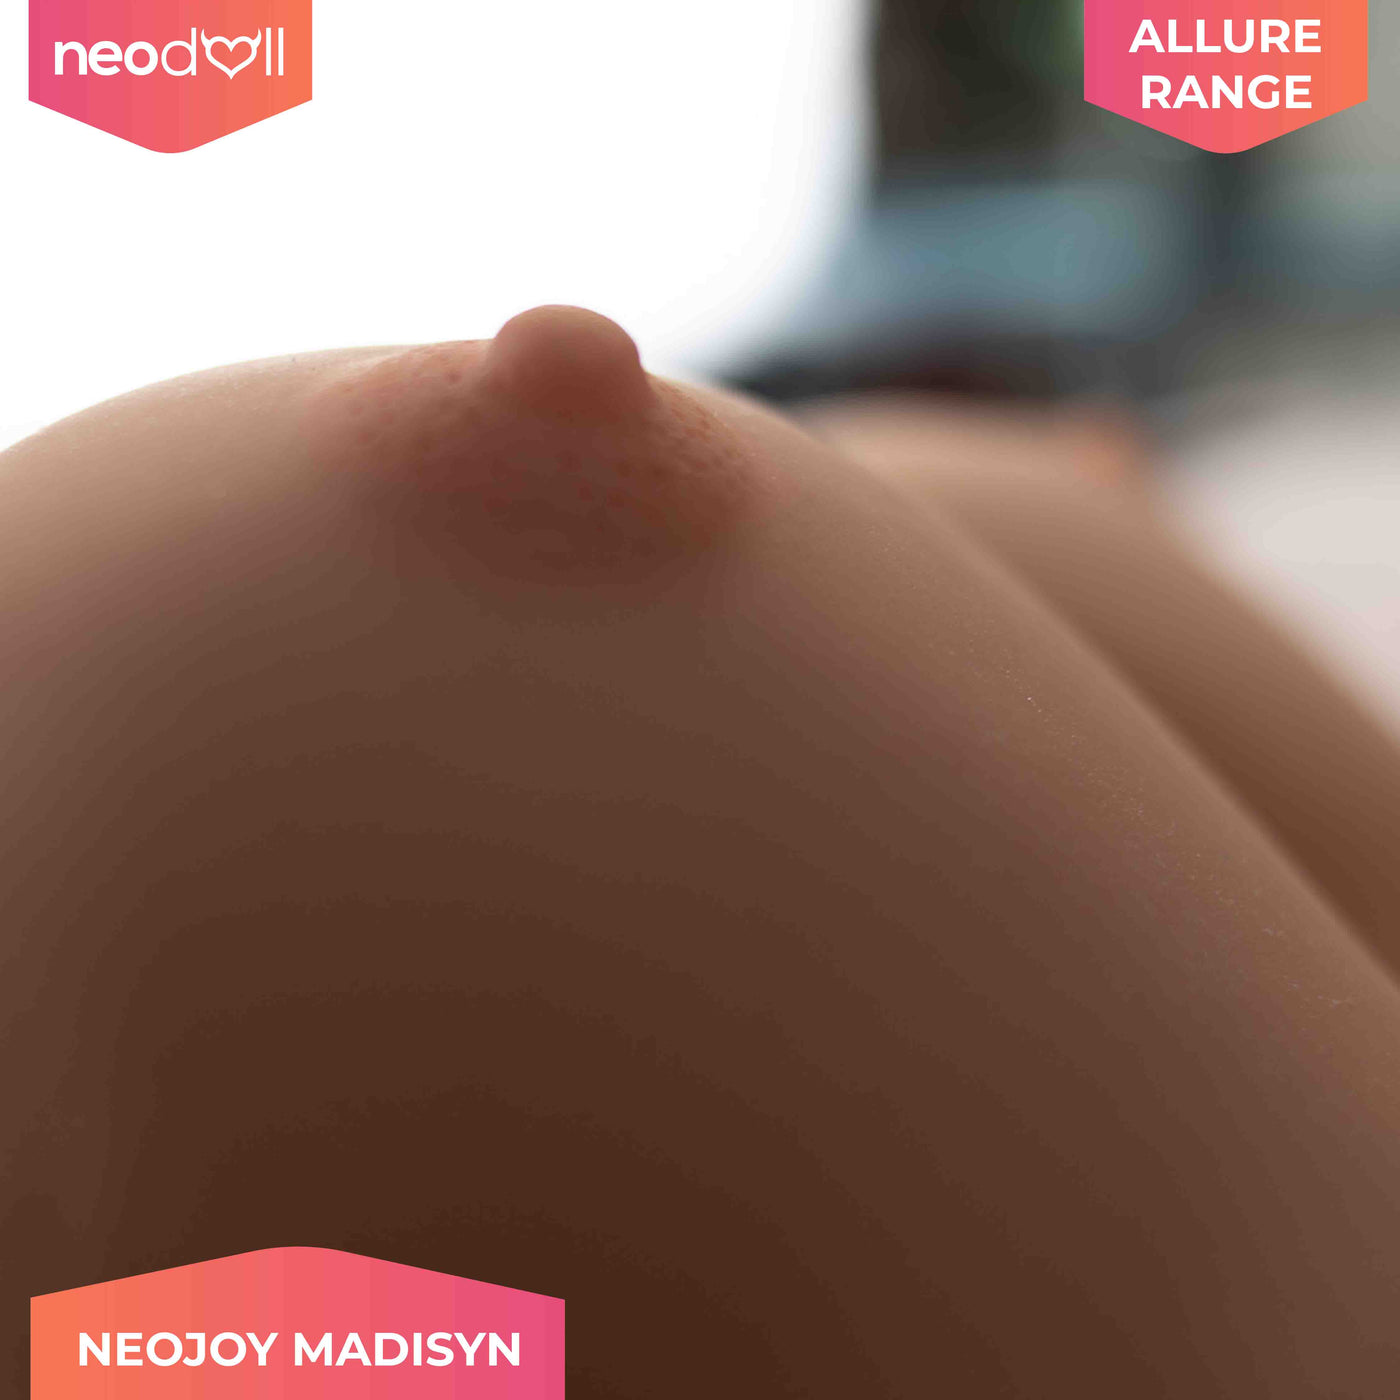 Neodoll Allure - Madisyn - Realistic Sex Doll - 166cm